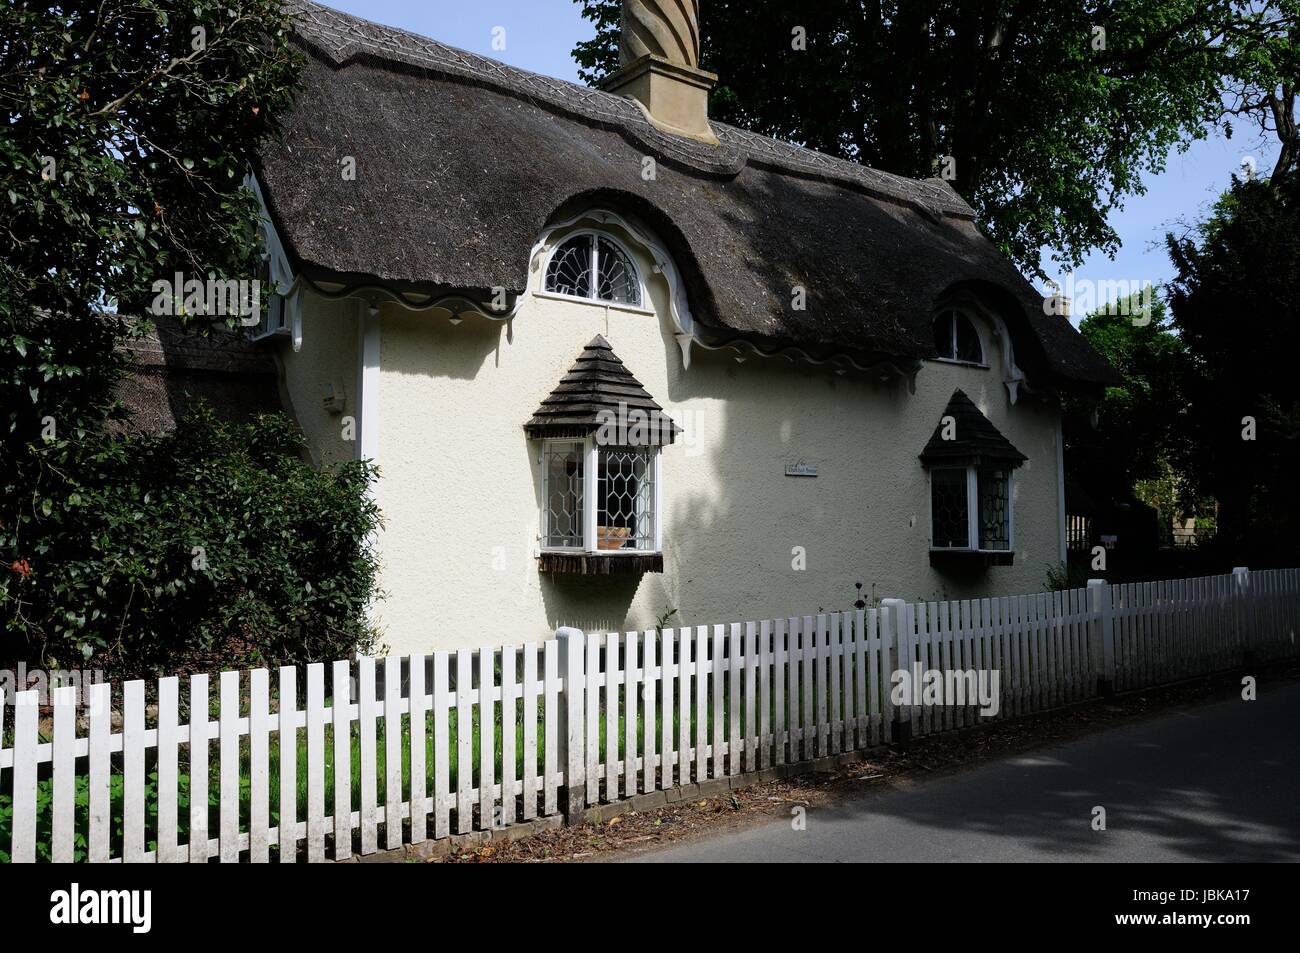 La casa di paglia, Old Warden. Bedfordshire, è una station wagon Ongley cottage costruito nel cottage in stile ornee con sopracciglio finestre dormer nel suo attico Foto Stock